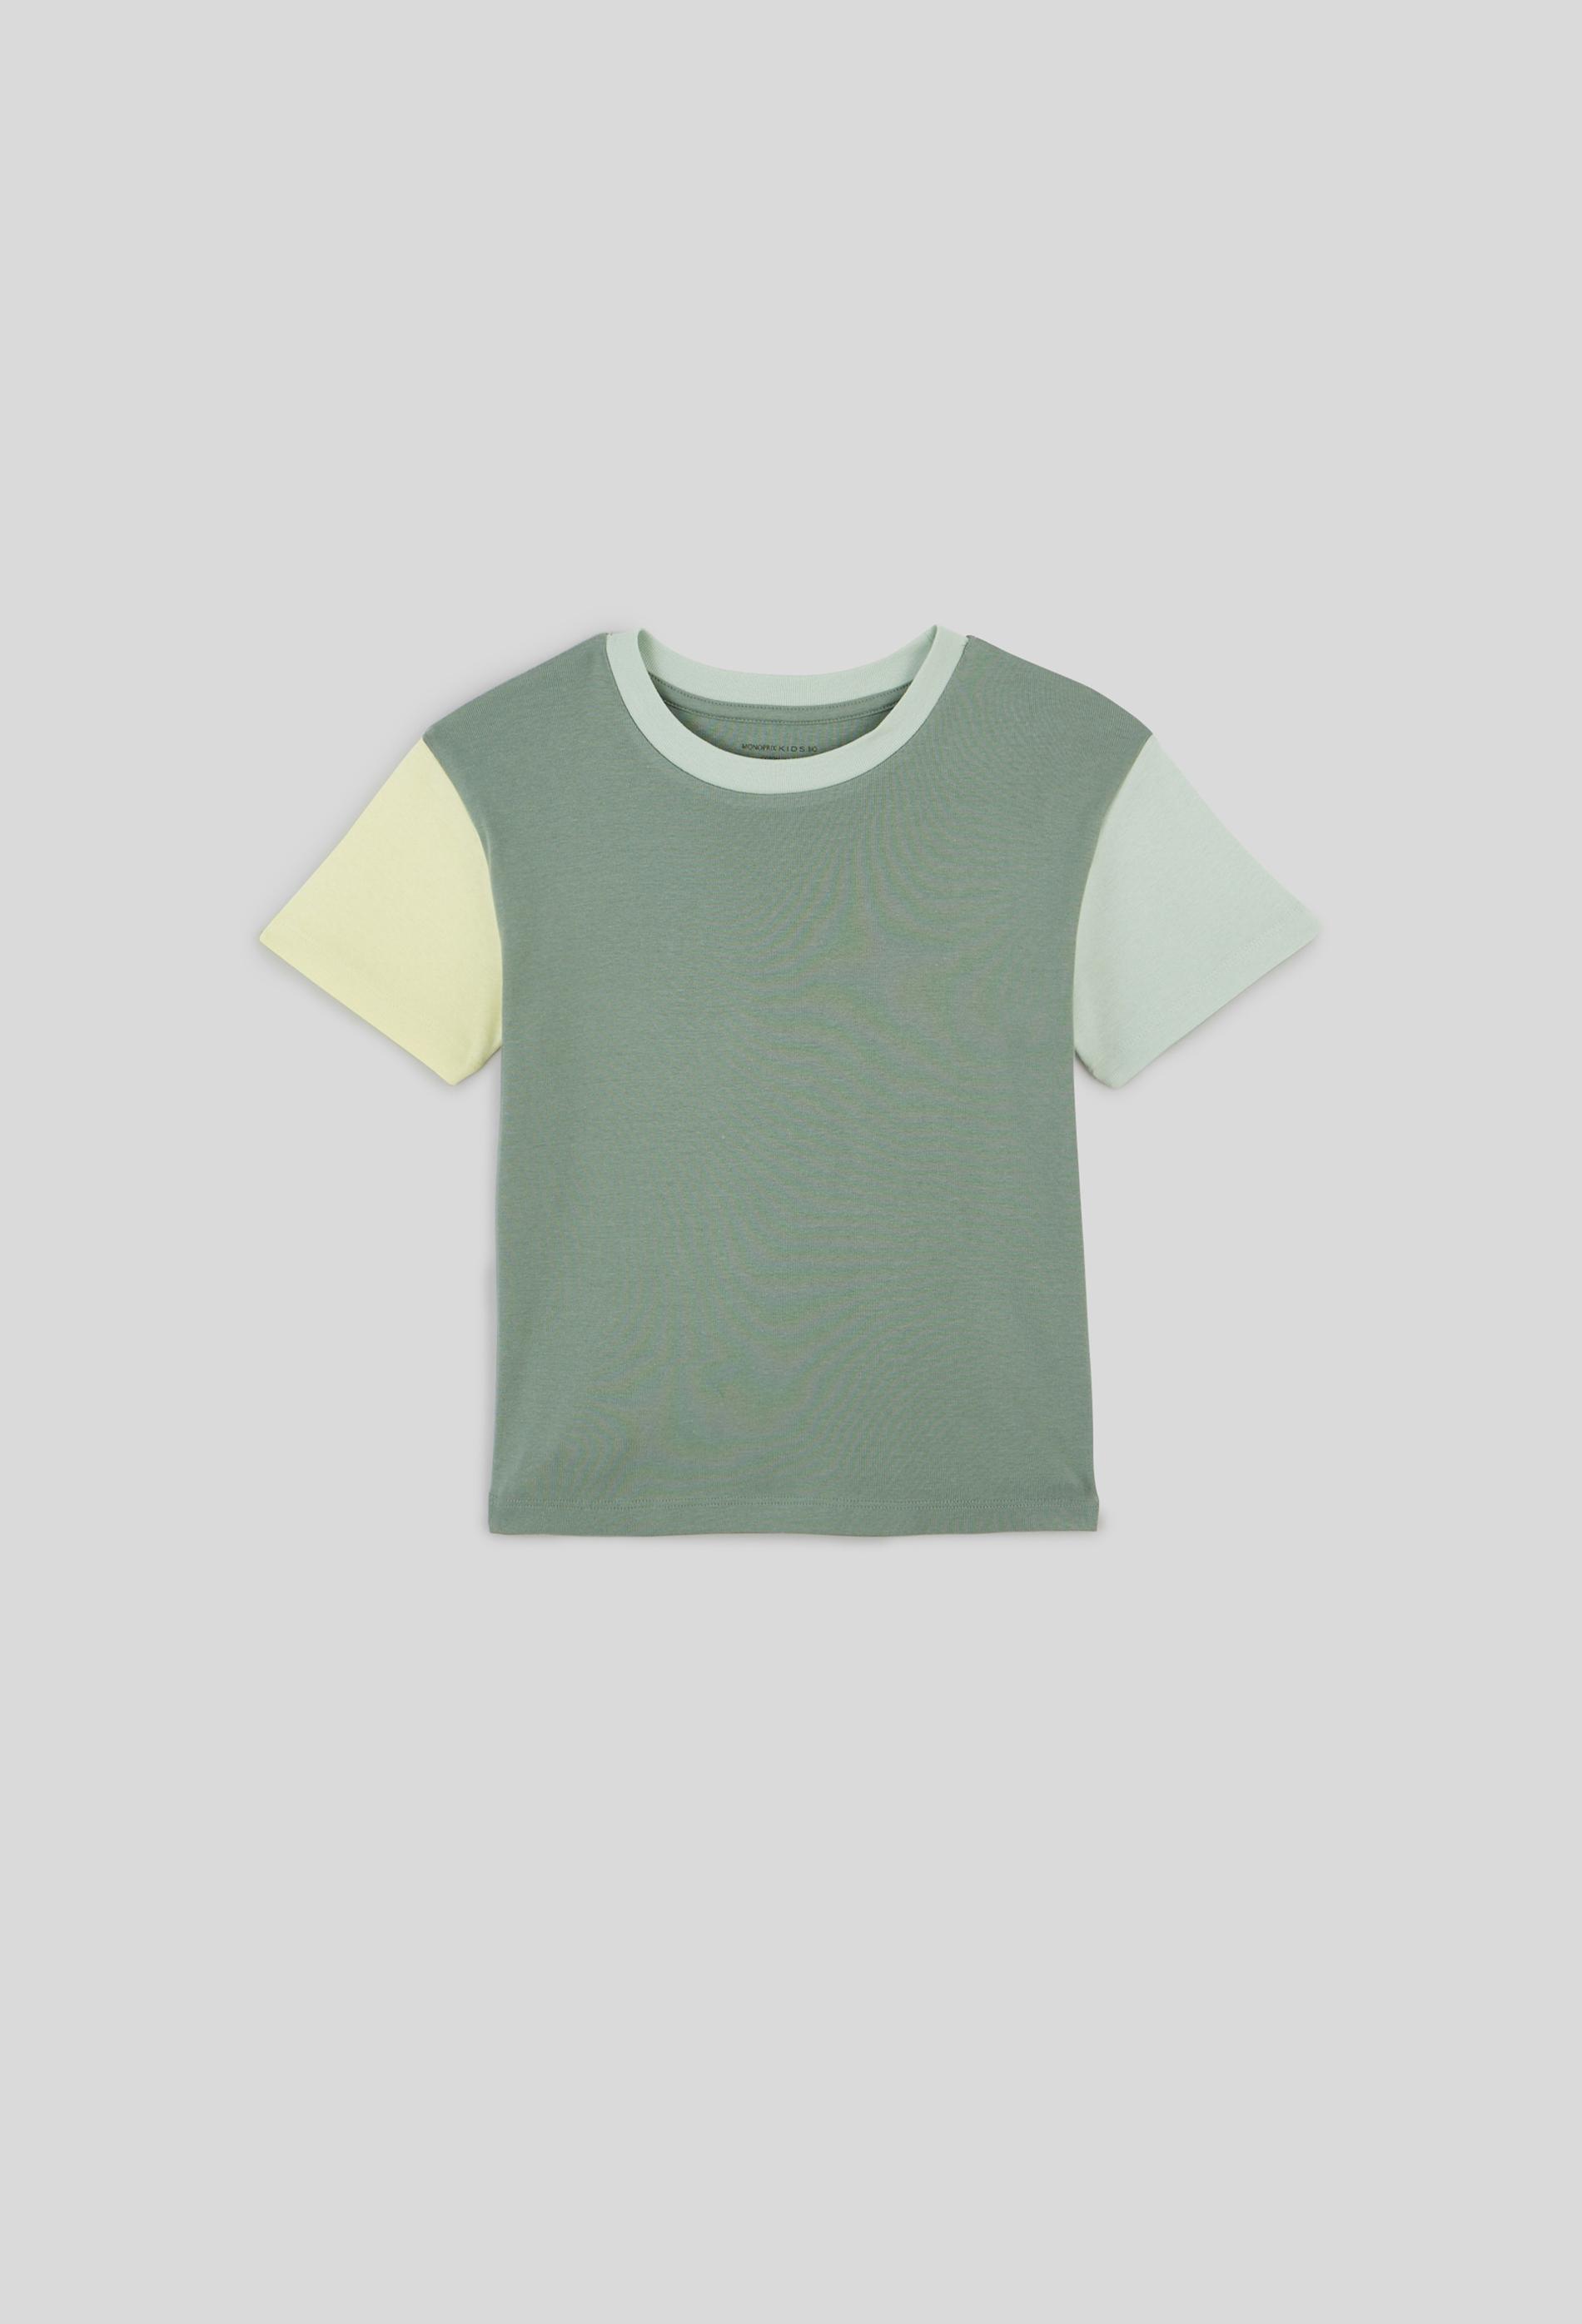 T-shirt manches courtes tricolore en coton BIO 5 ans vert